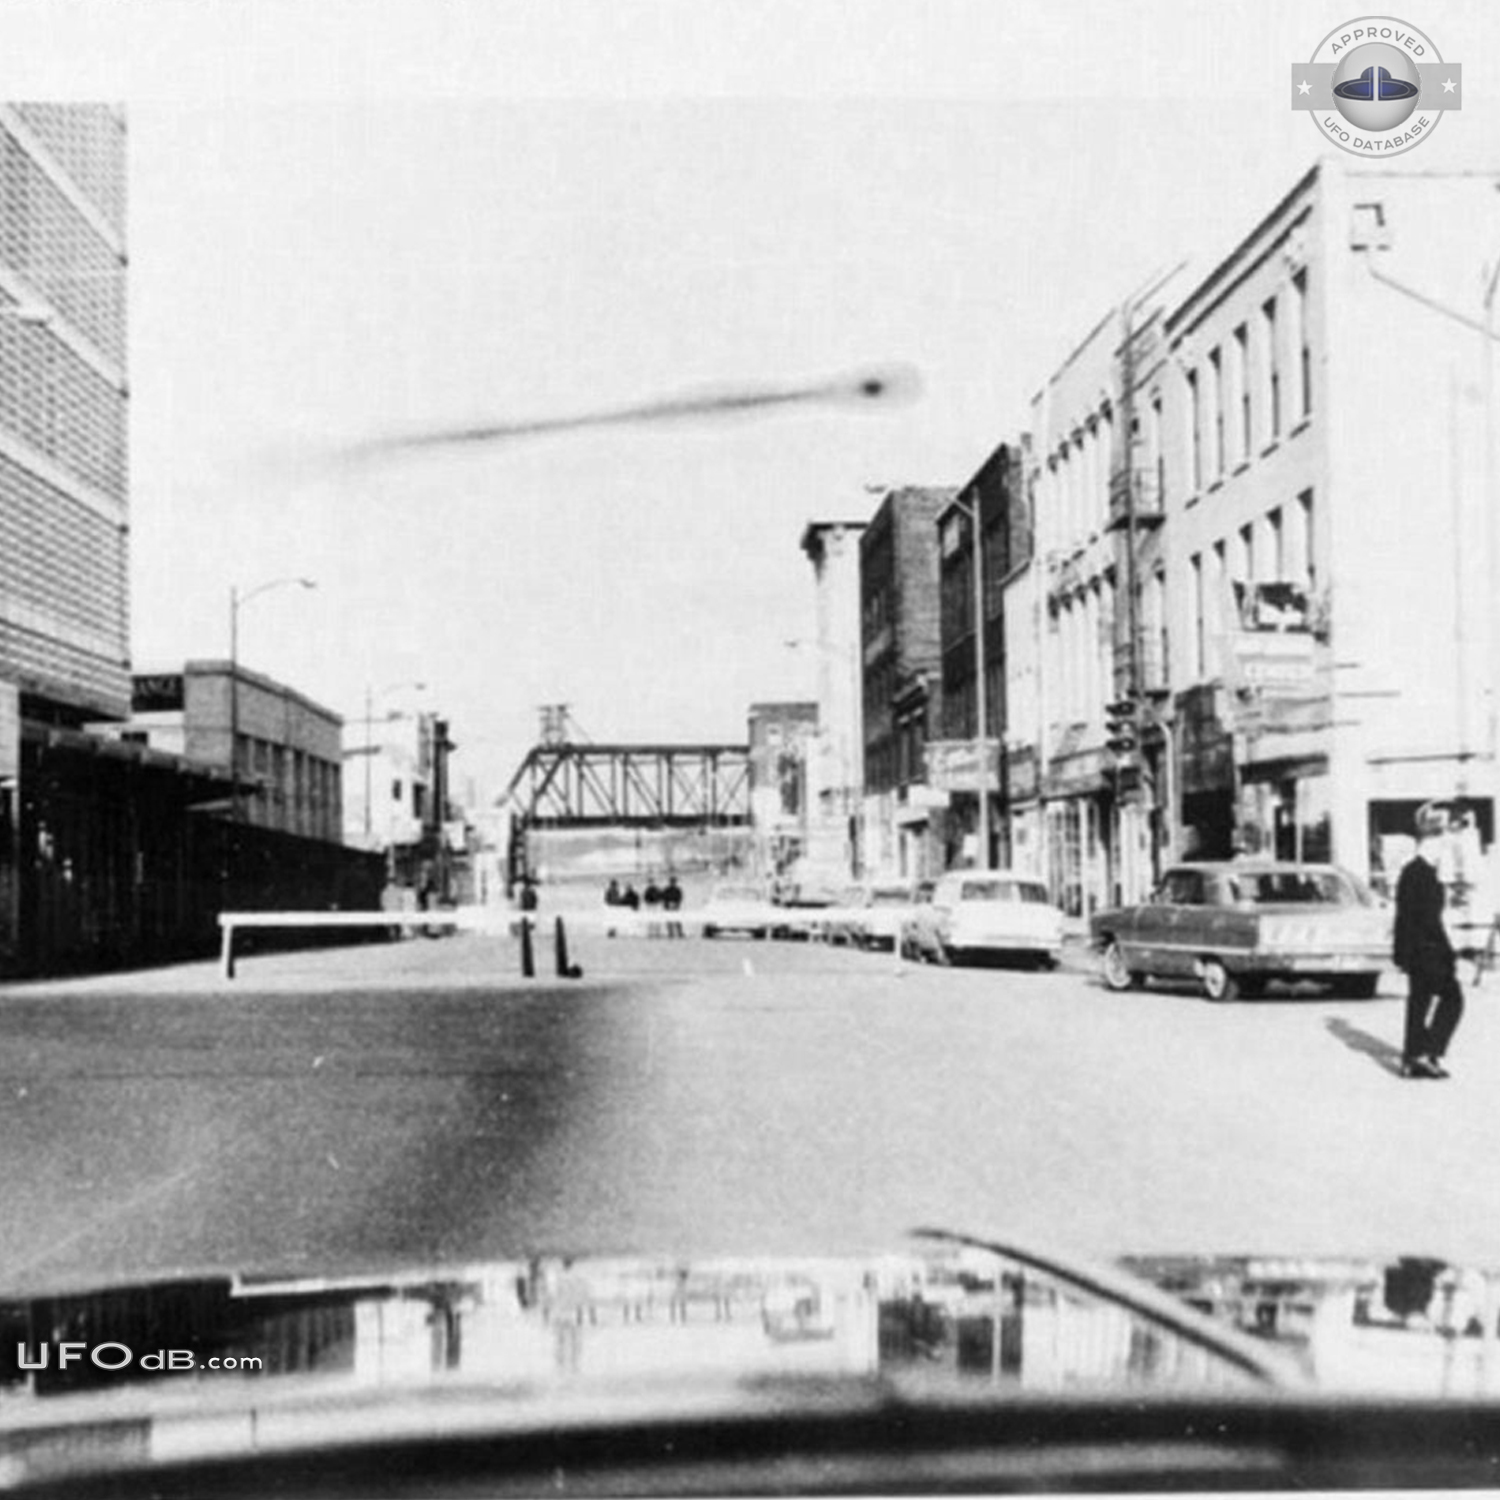 CIA Declassified UFO picture of 1965 in Omaha, Nebraska USA UFO Picture #631-2